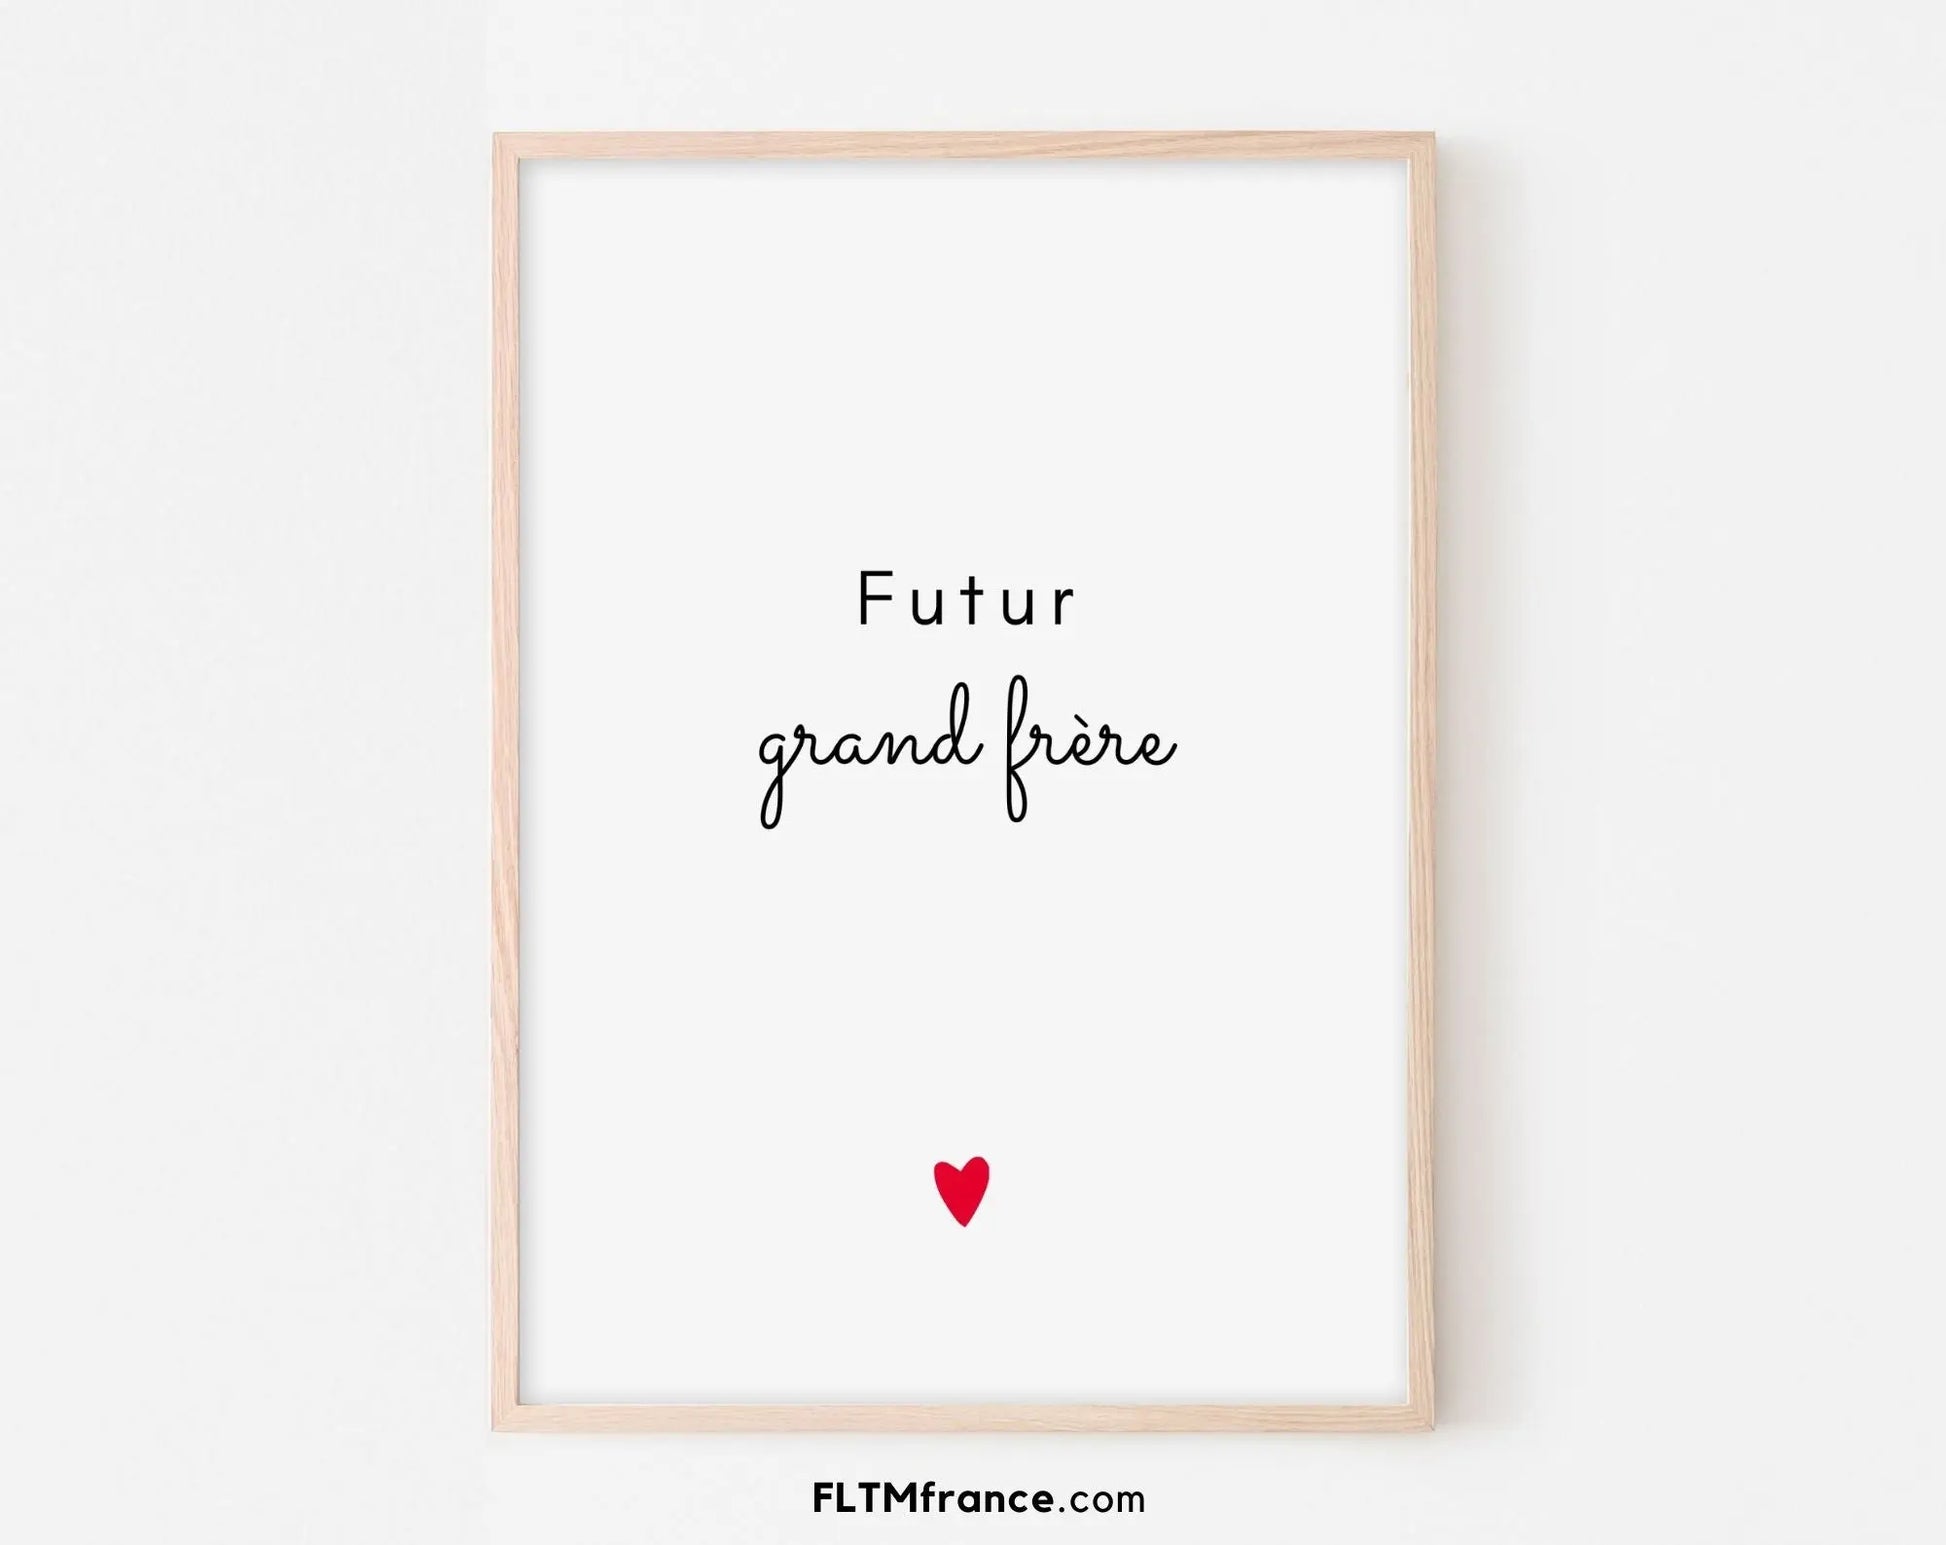 2 affiches "Futur grand frère et future grande sœur" - Annonce grossesse originale FLTMfrance